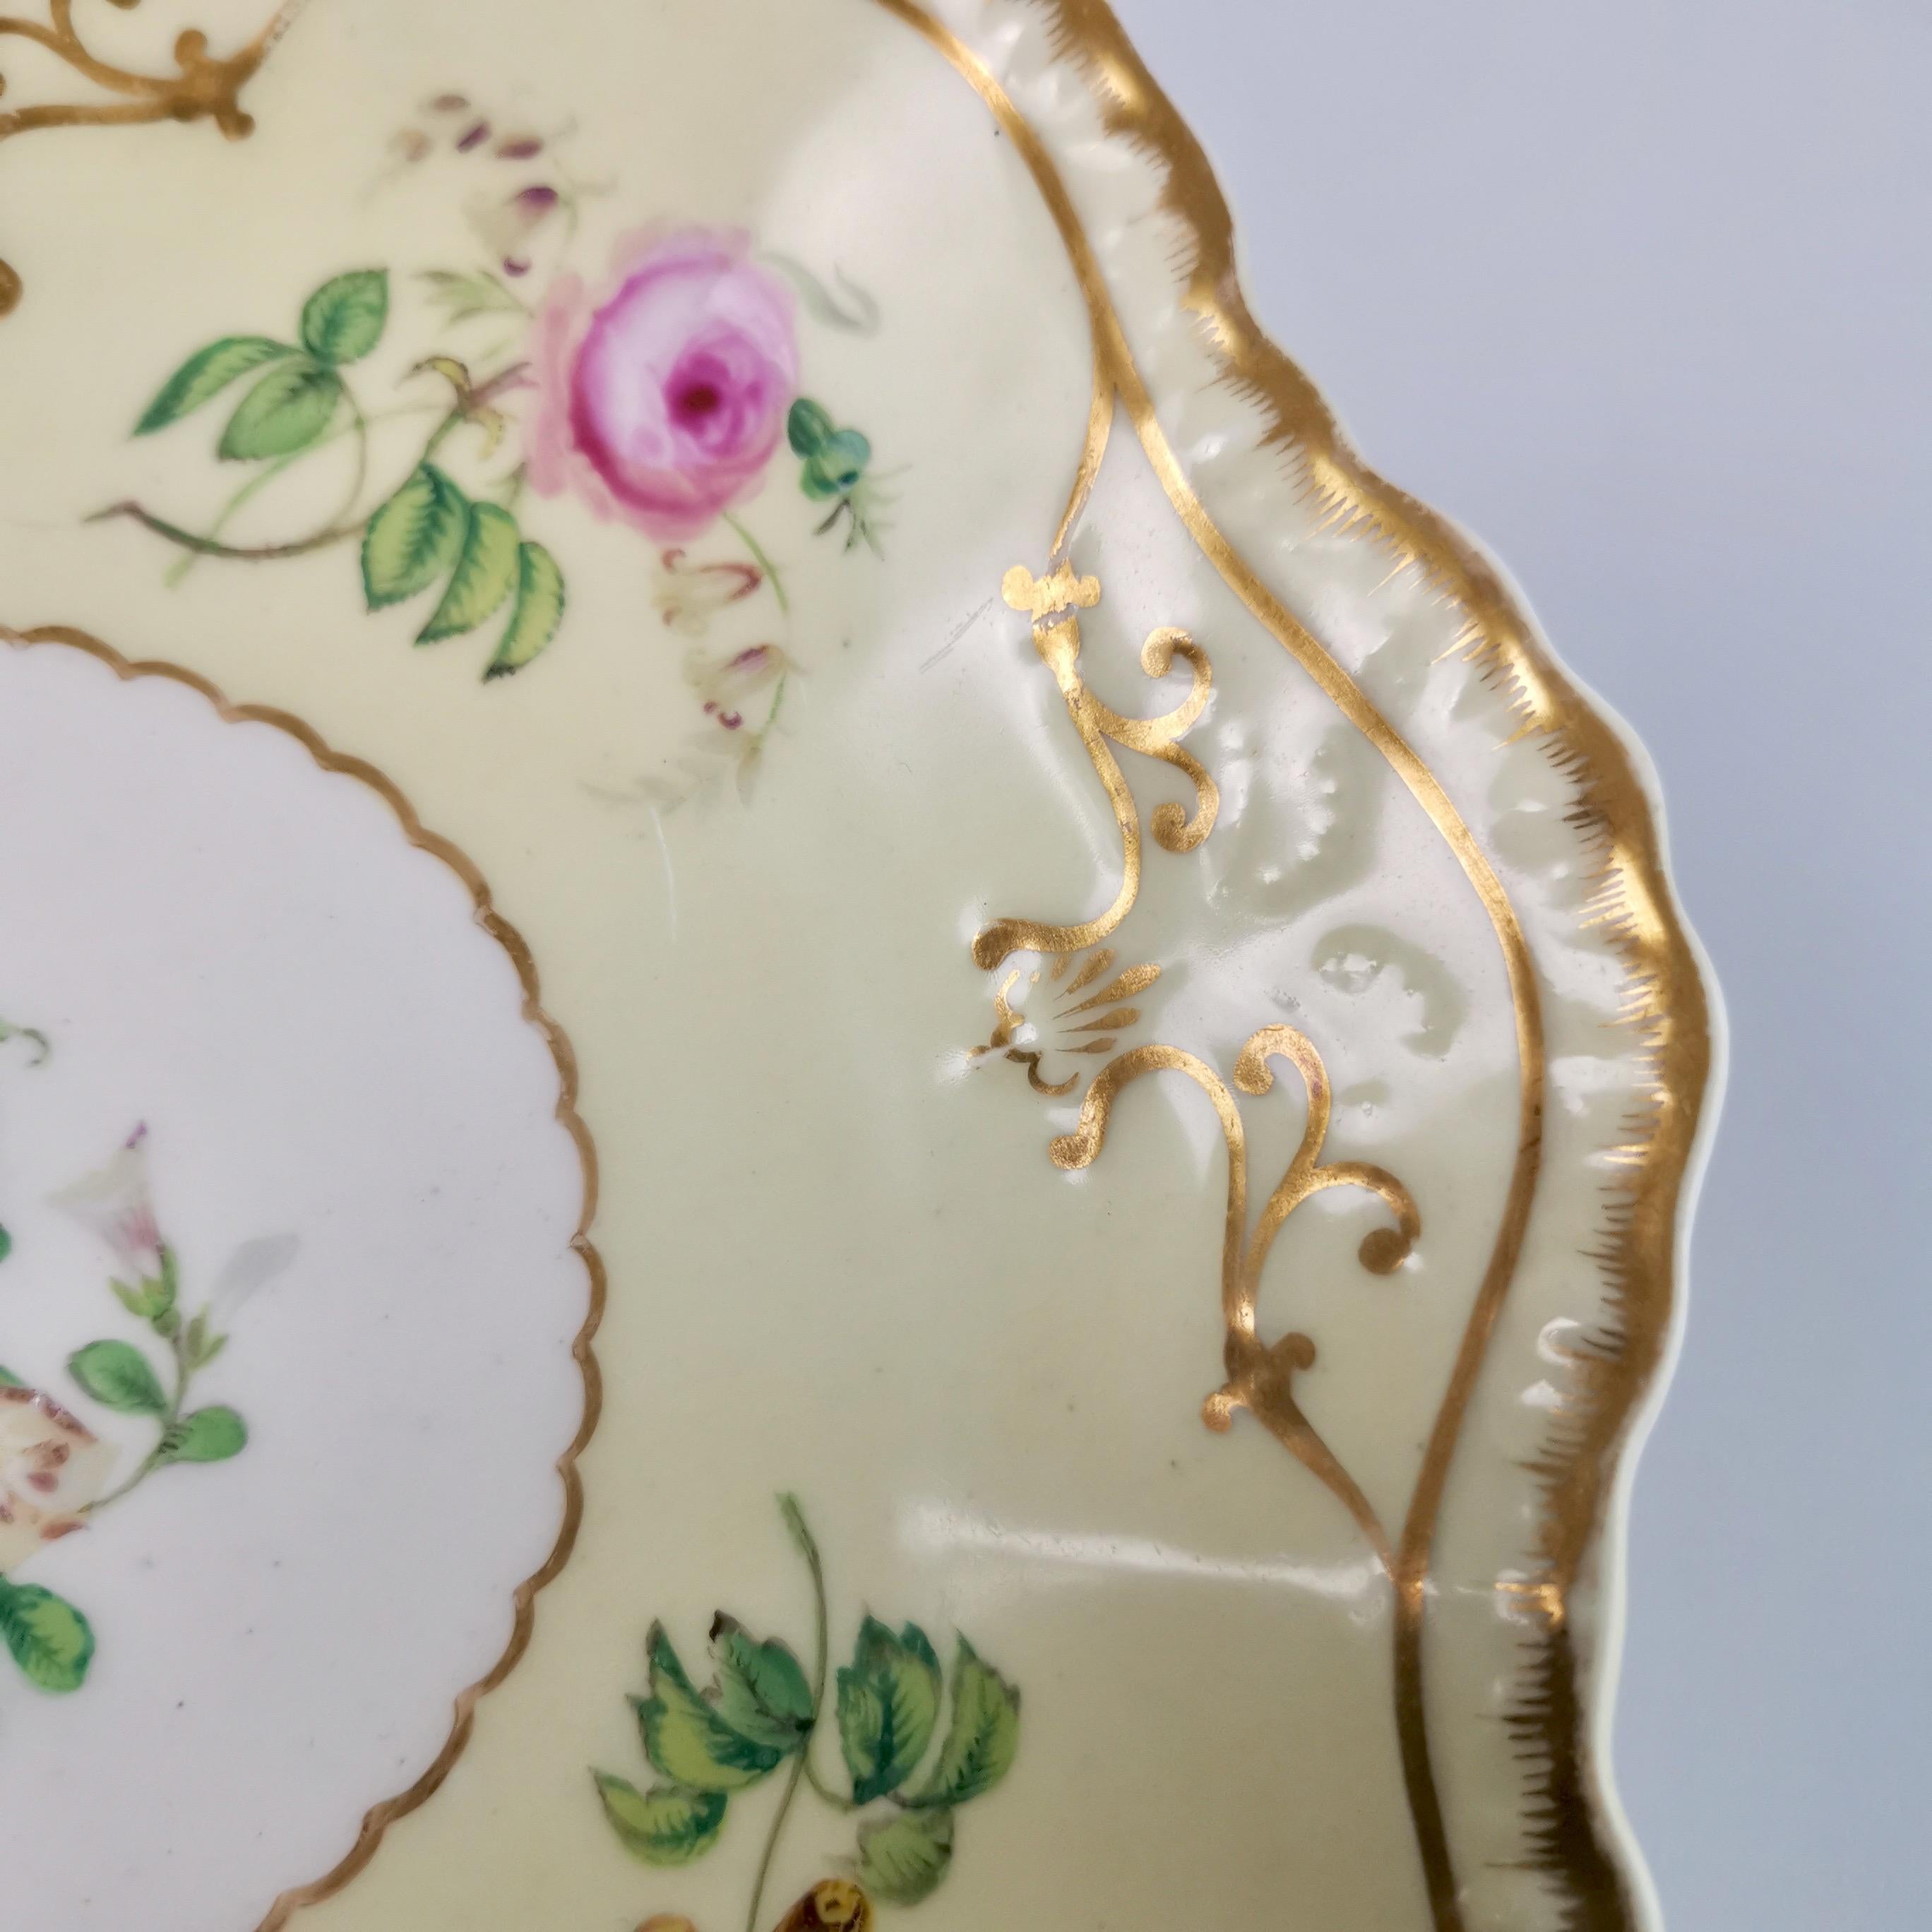 Copeland & Garrett Porcelain Dessert Set, Yellow with Butterflies, 1833-1847 8